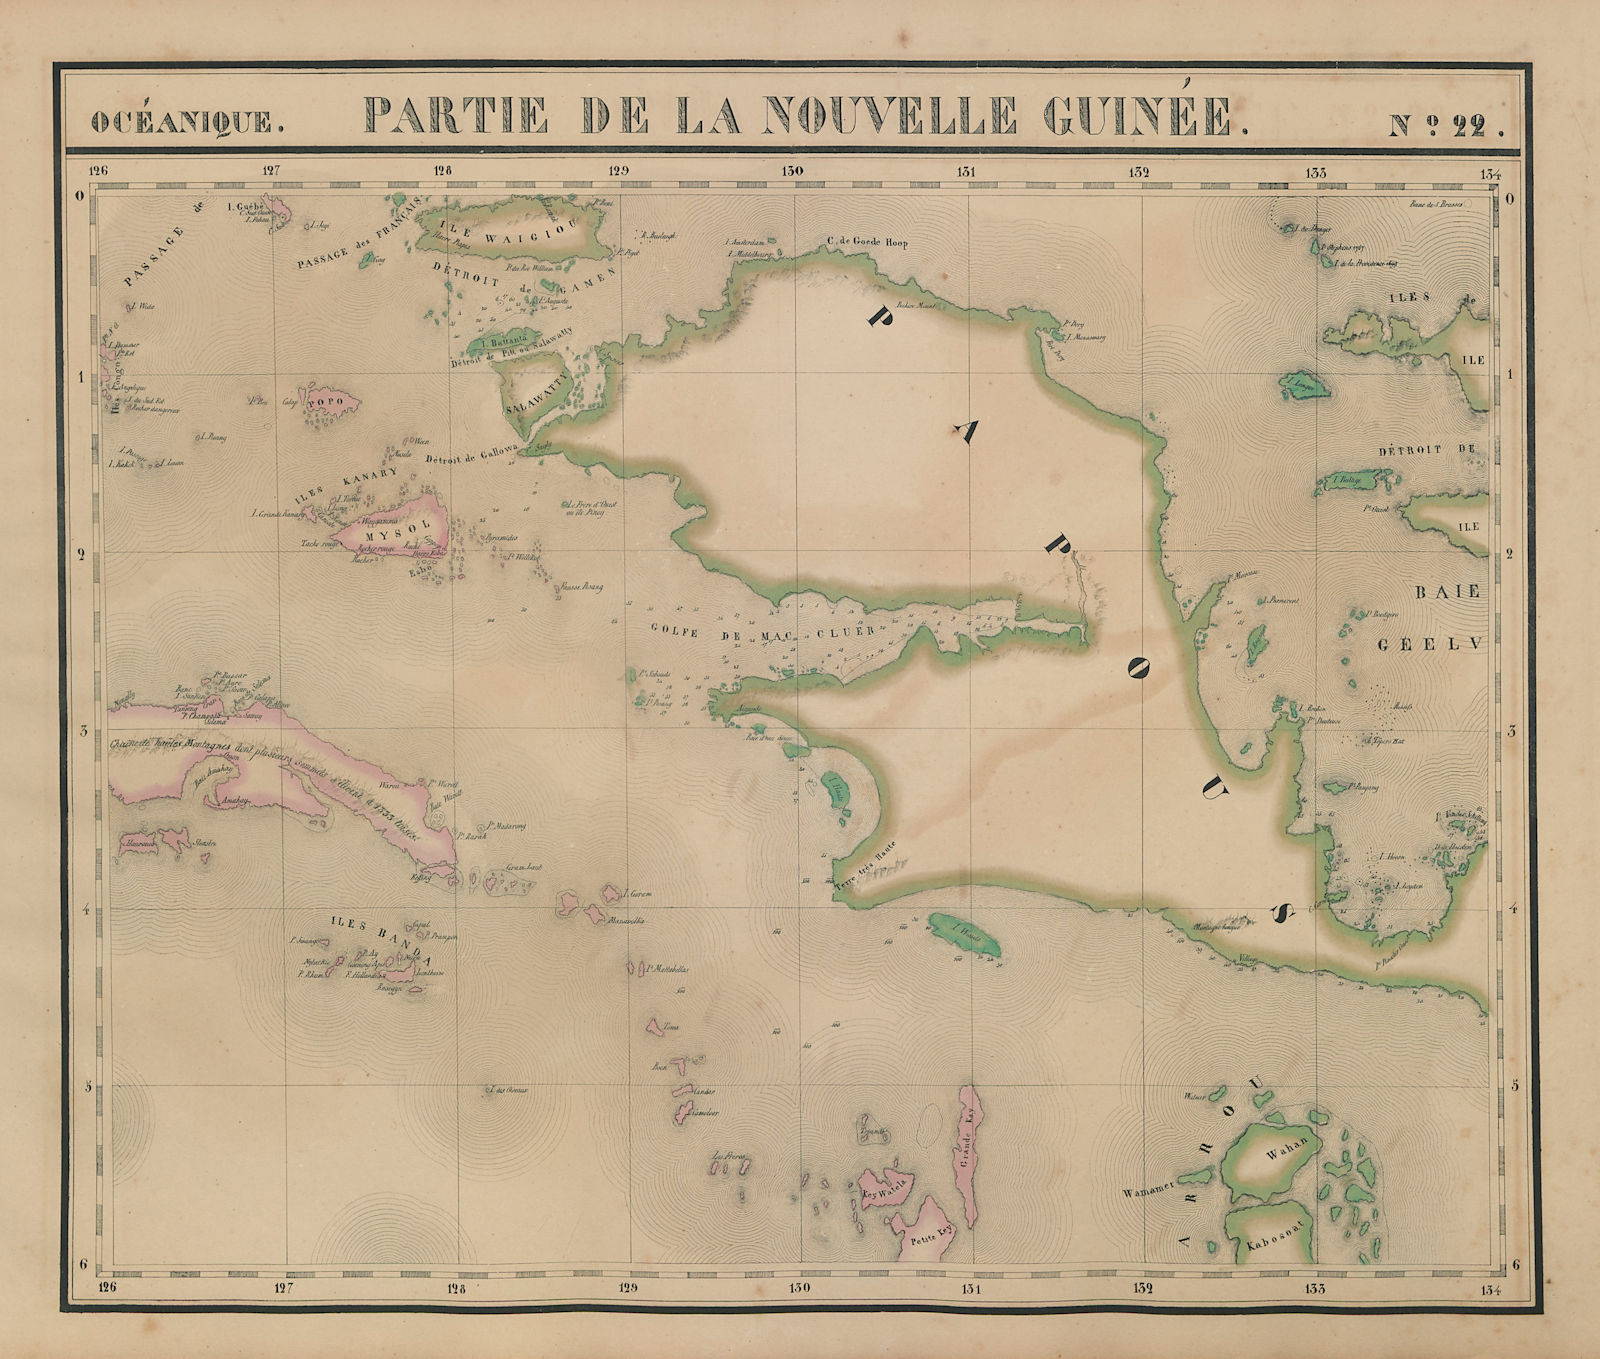 Océanique Partie de la Nouvelle Guinée 22 W Papua Moluccas VANDERMAELEN 1827 map